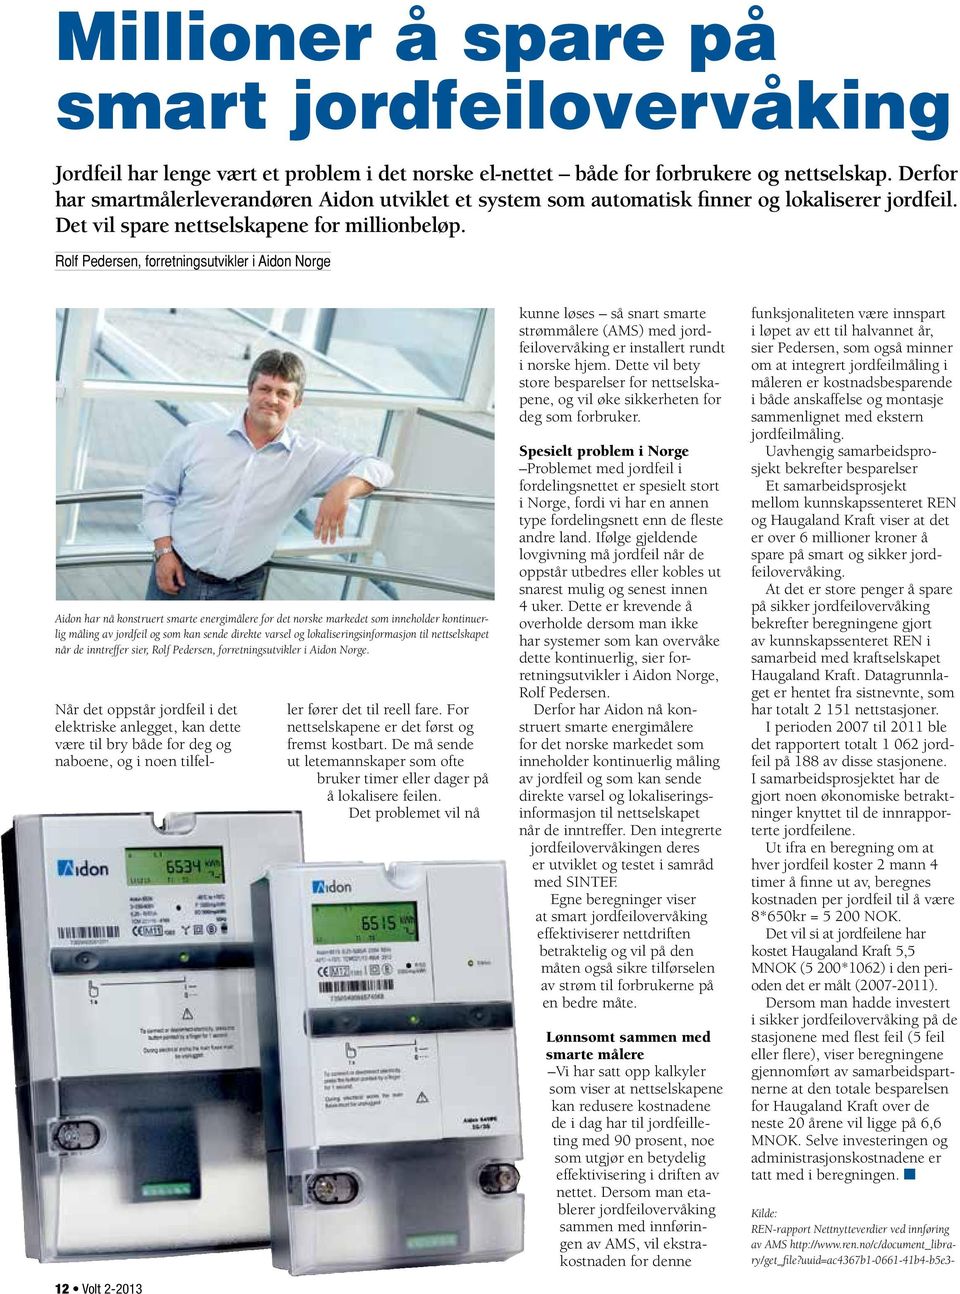 Rolf Pedersen, forretningsutvikler i Aidon Norge Aidon har nå konstruert smarte energimålere for det norske markedet som inneholder kontinuerlig måling av jordfeil og som kan sende direkte varsel og